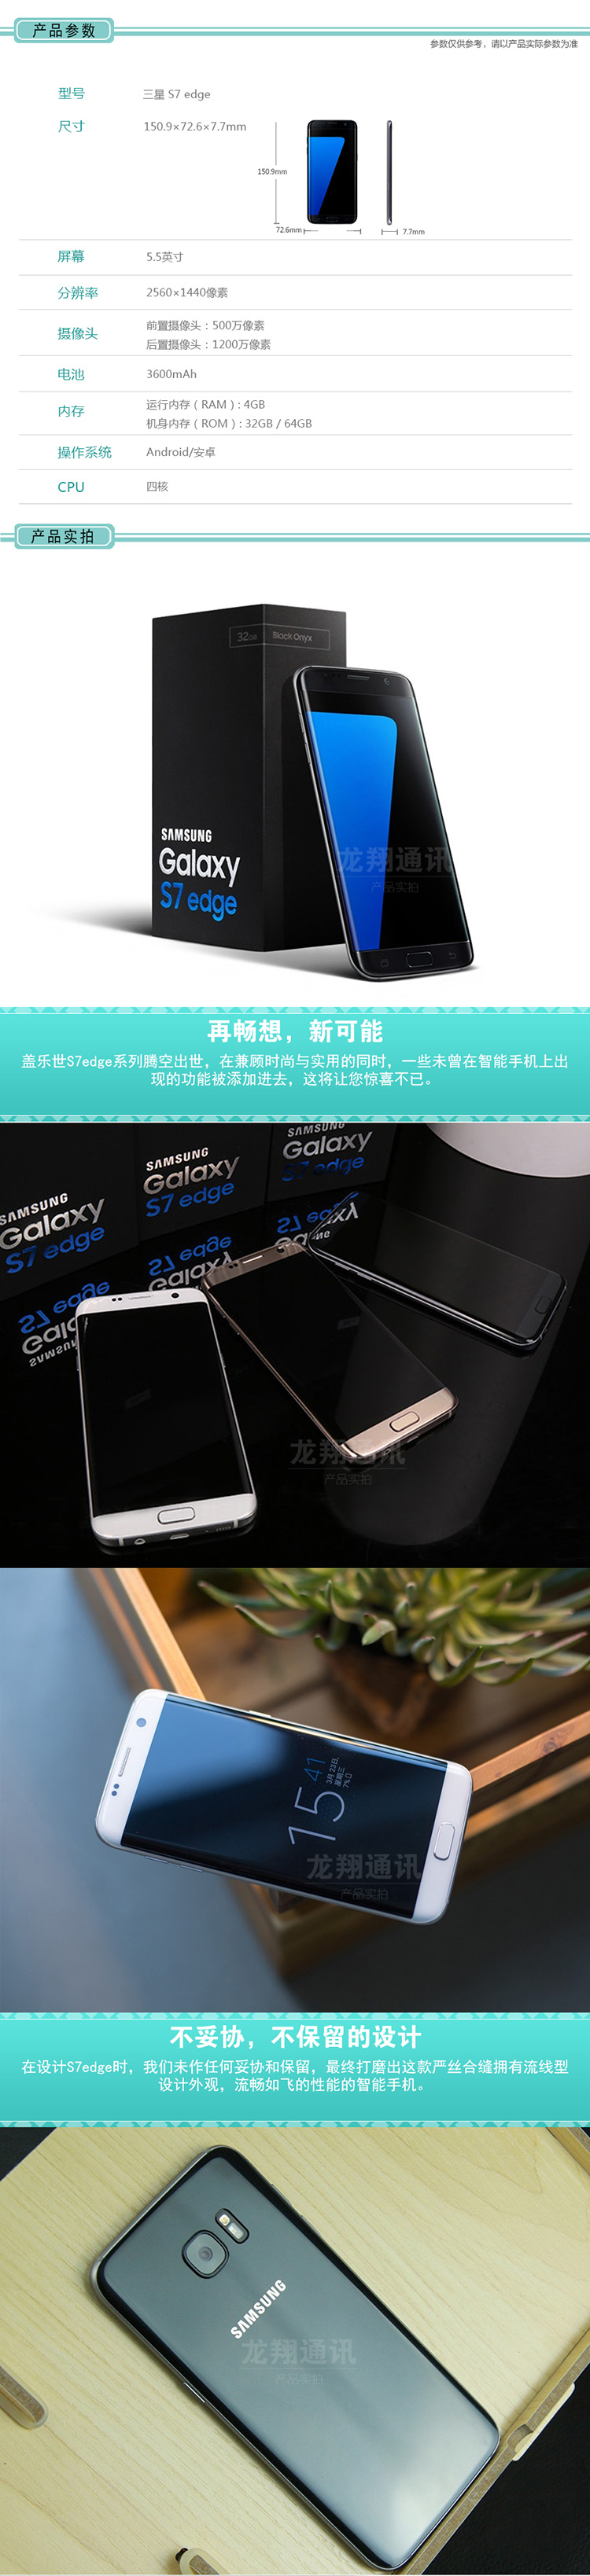 三星GALAXY S7 Edge G9350 32G 全网通 曲面侧屏 4G智能手机 黑色